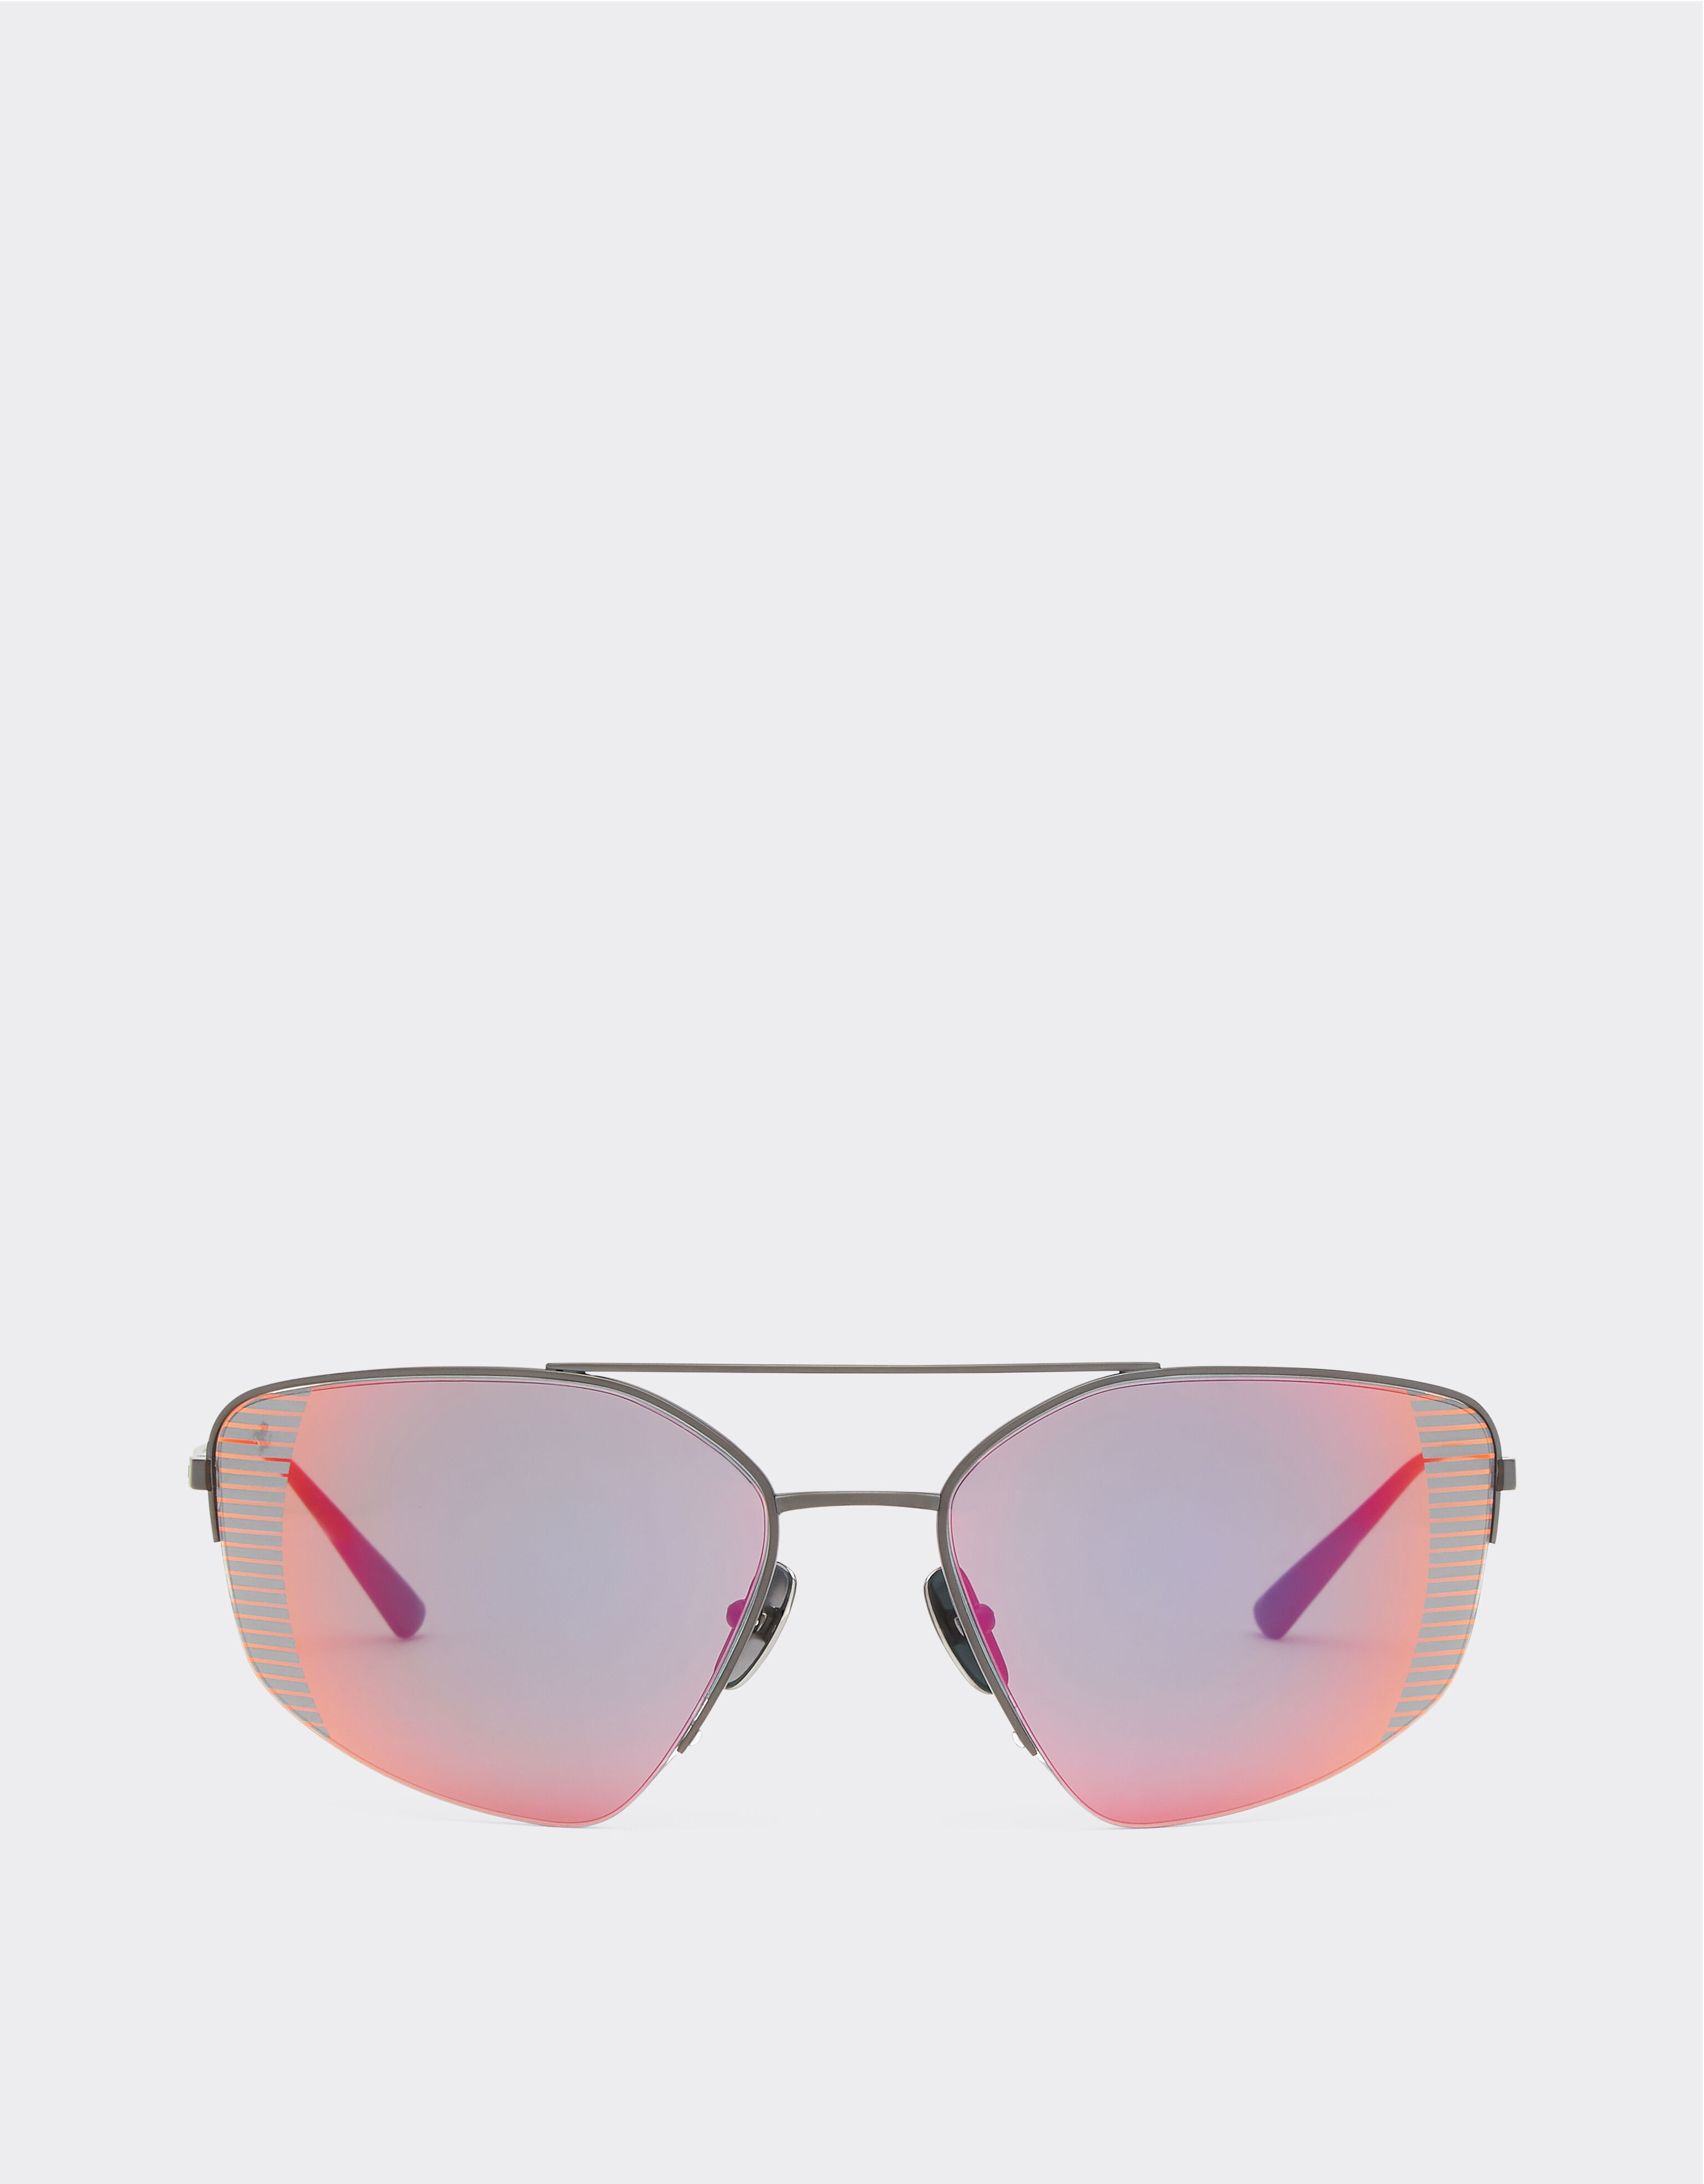 ${brand} Ferrari sunglasses in black titanium with red mirror lenses ${colorDescription} ${masterID}